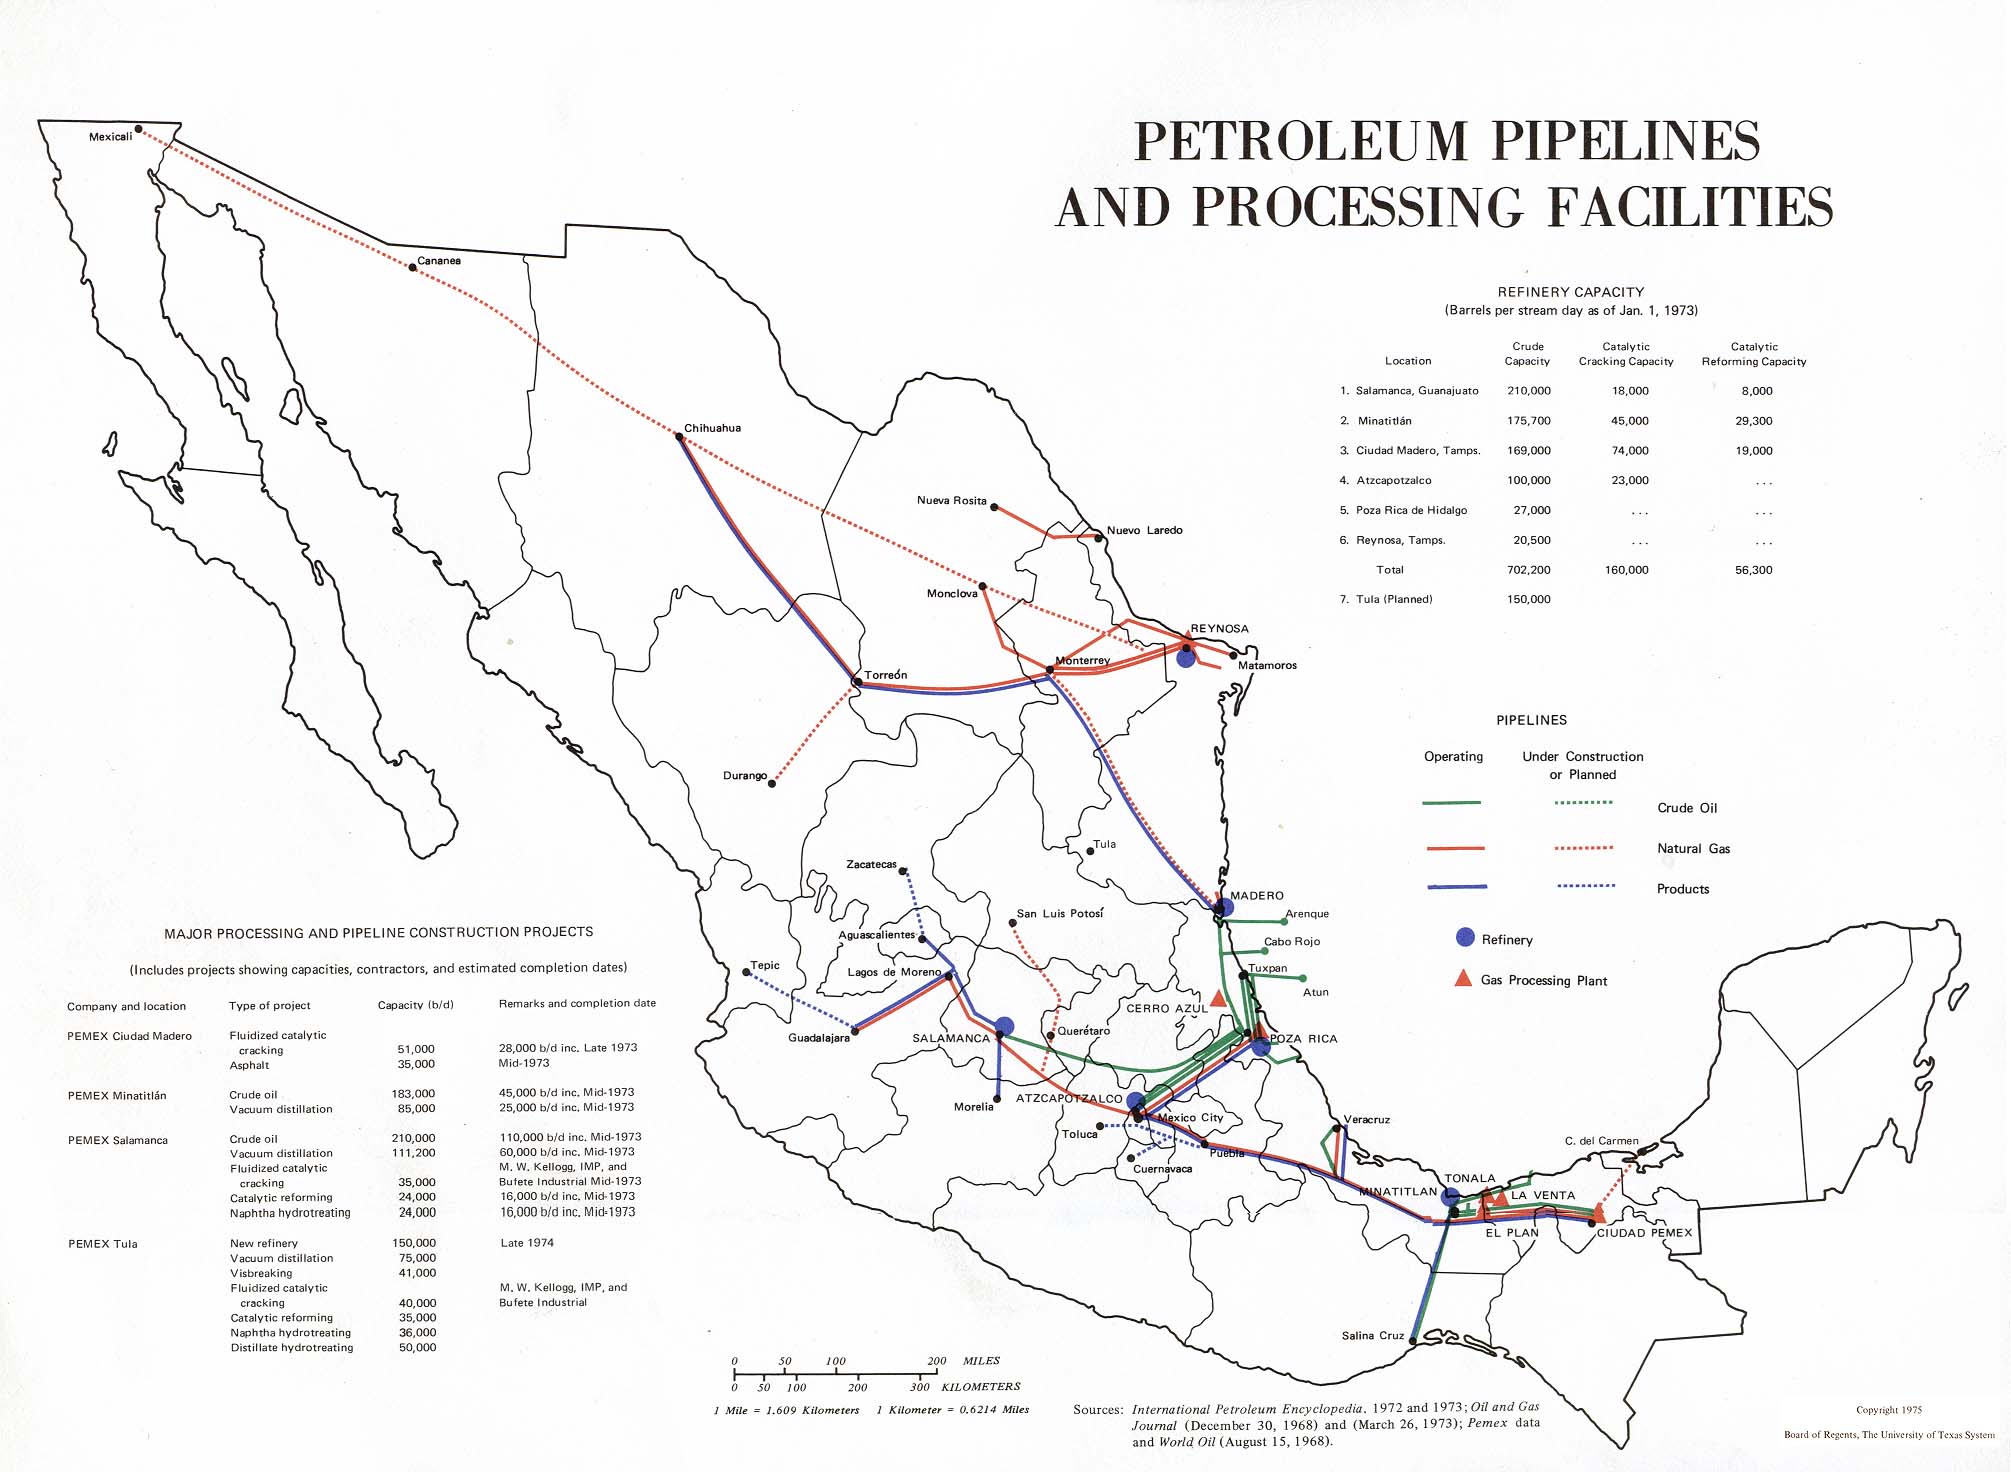 Oleoductos y las Instalaciones de Procesamiento Petroleras, México 1975